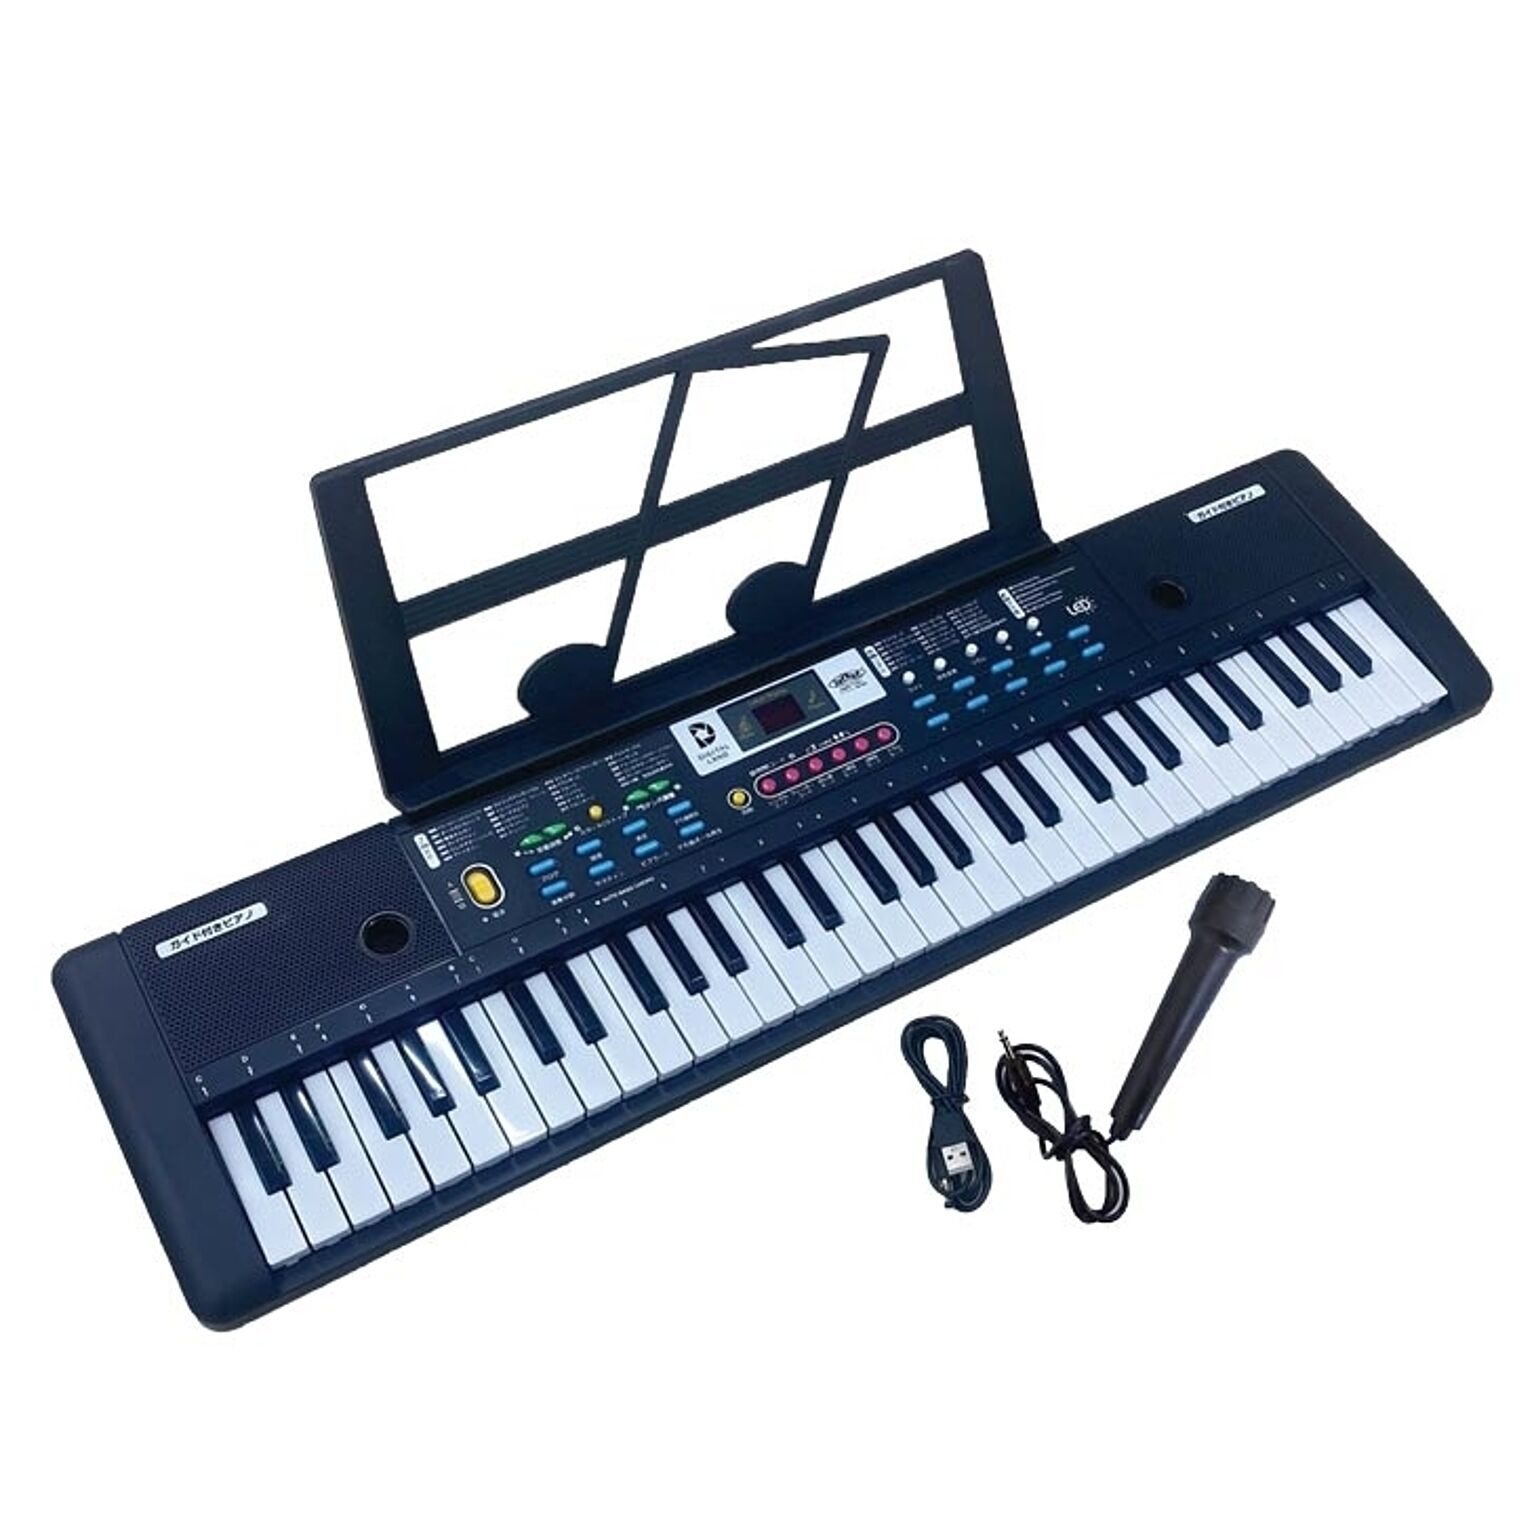 光る鍵盤 電子ピアノ キーボード ガイド機能付き 61鍵盤